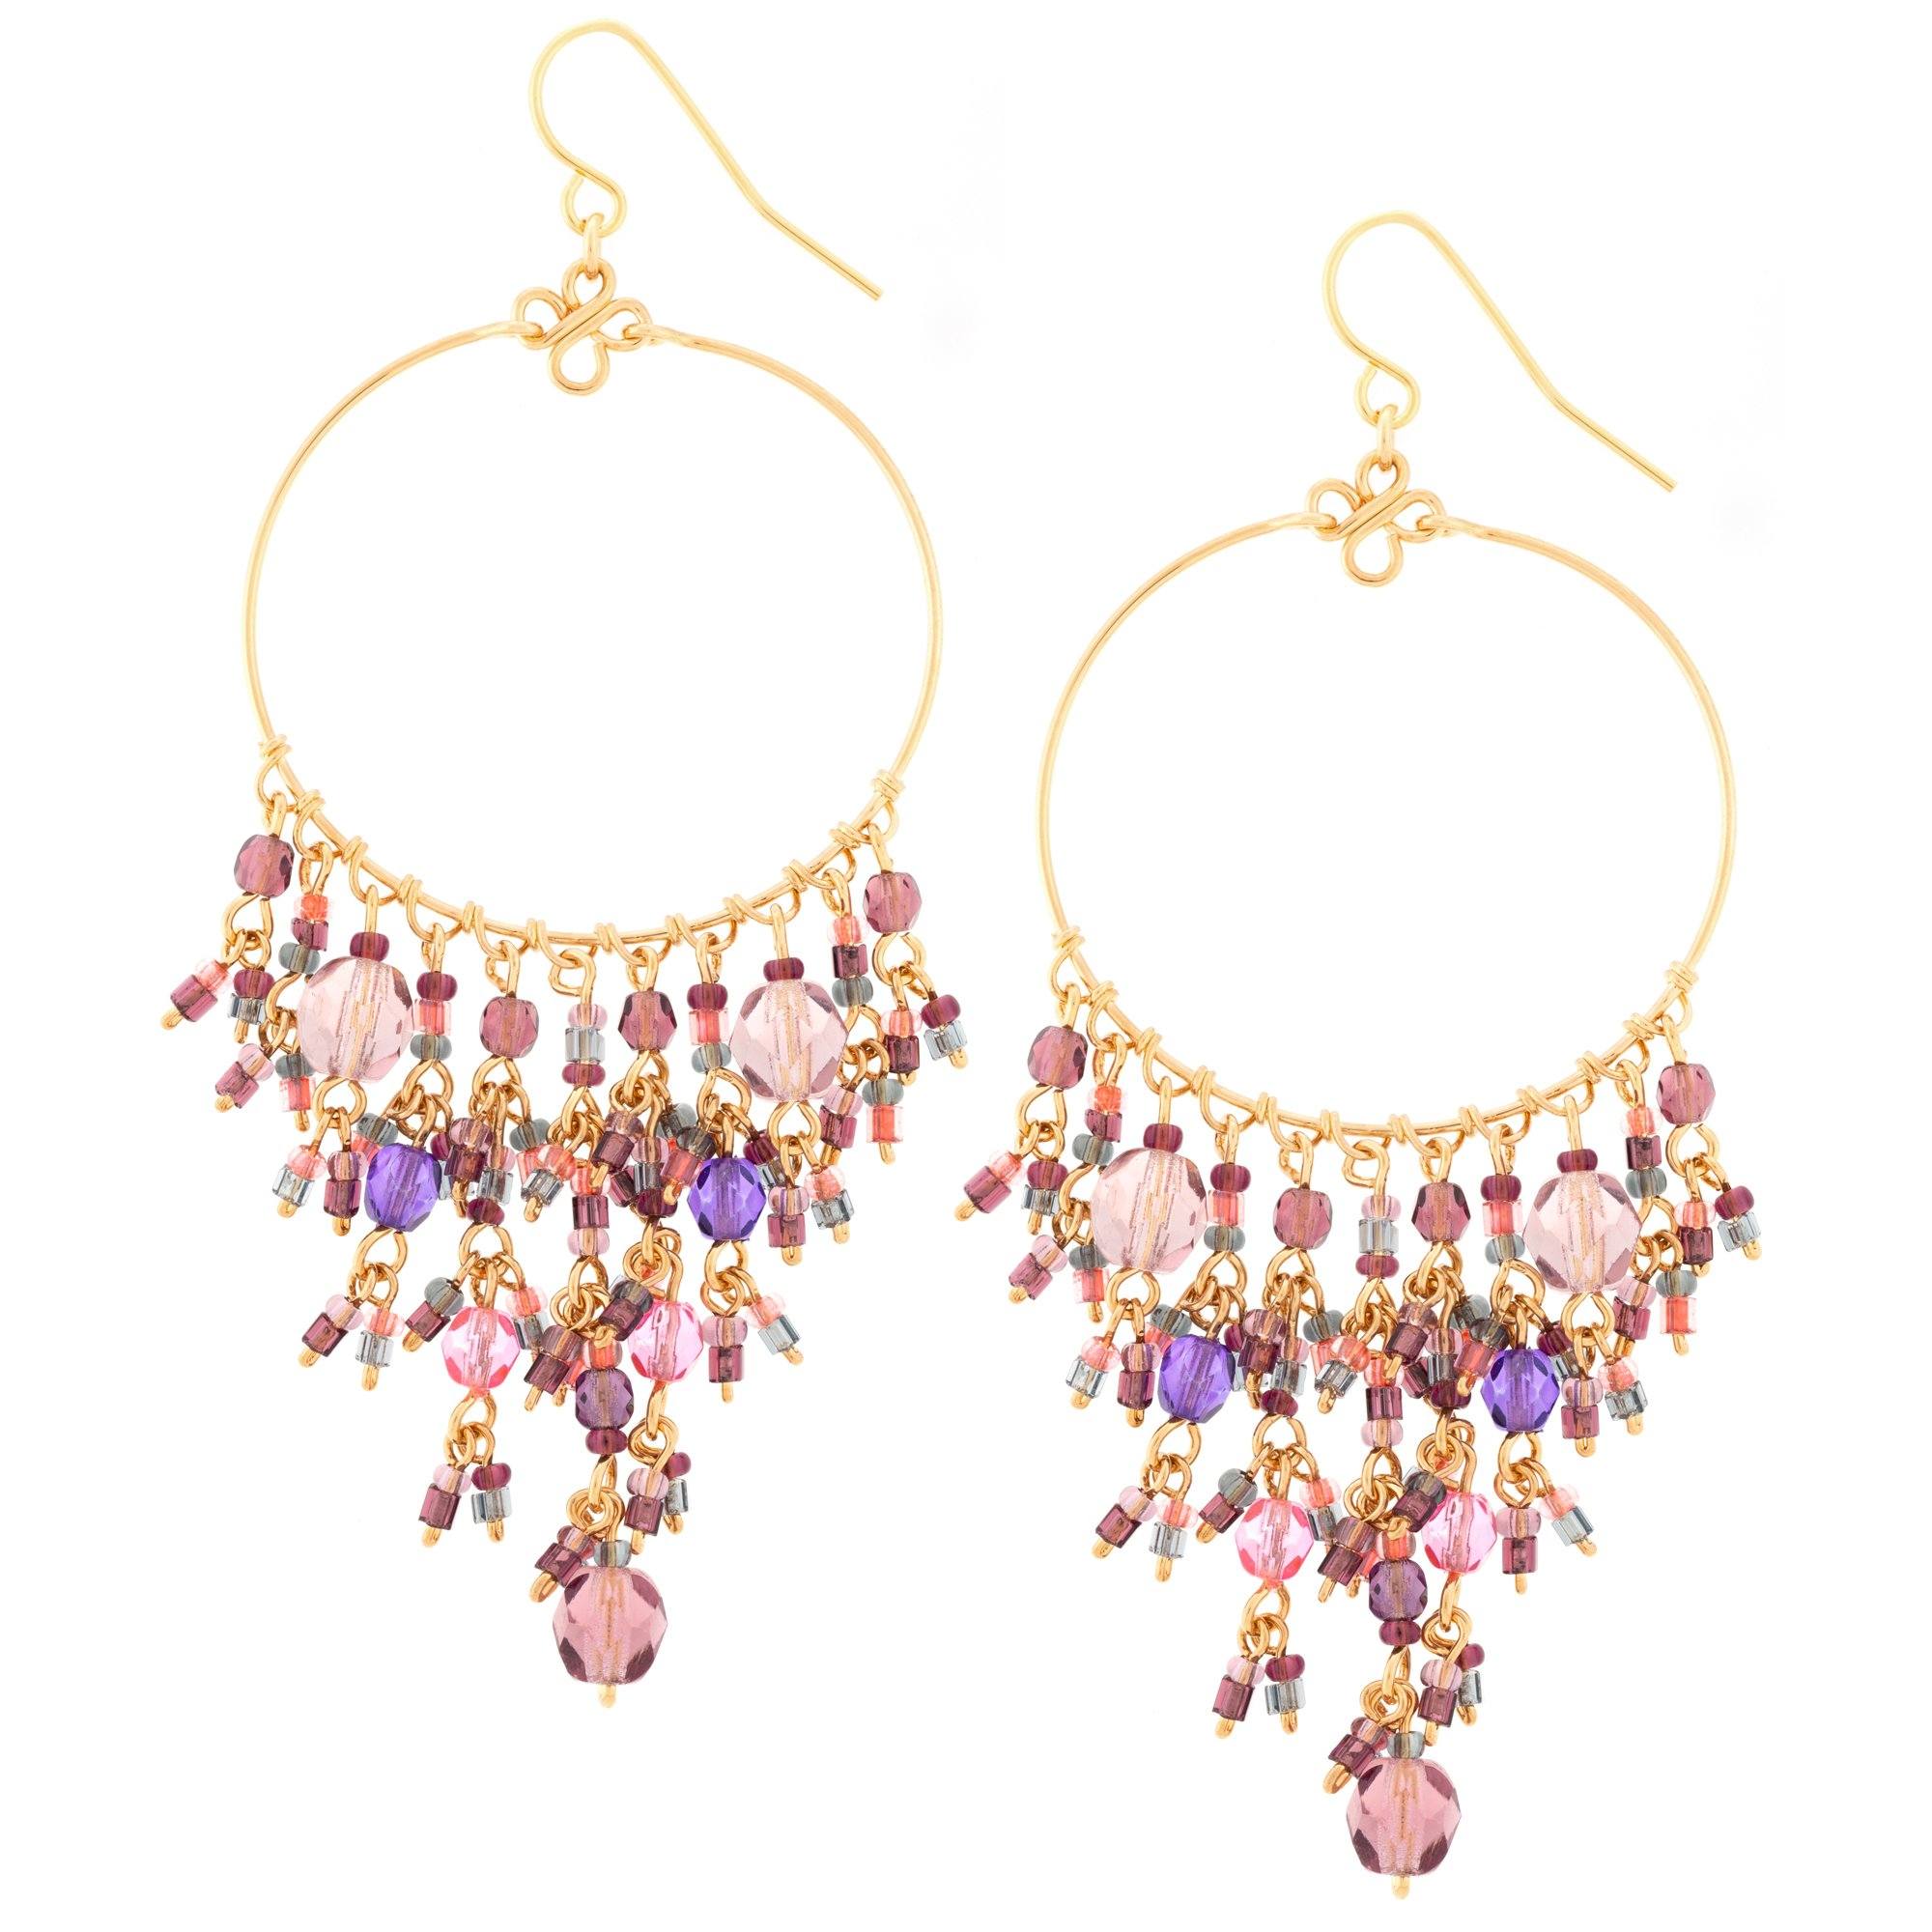 Dazzling Beaded Gold Hoop Earrings - Pink